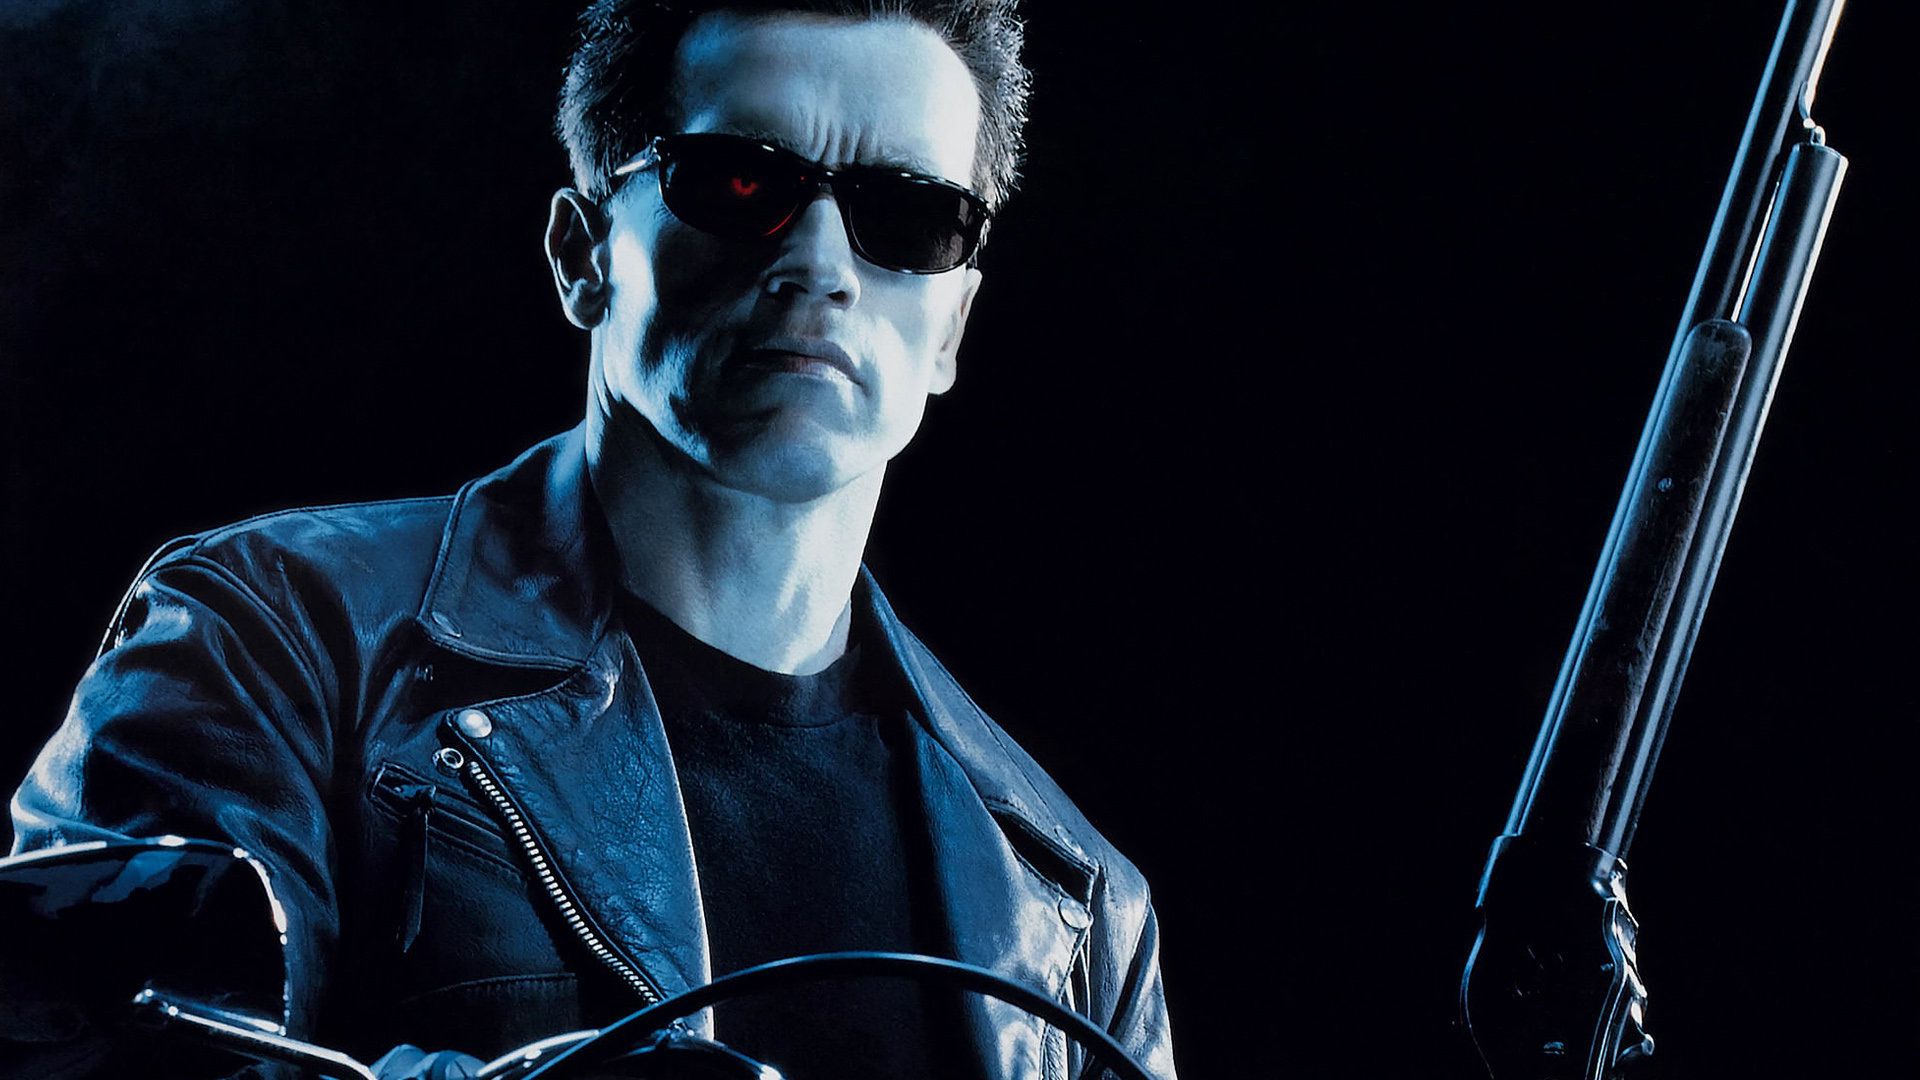 Terminator 2: Judgment Day Wallpaper. Holiday Wallpaper, Day of the Dead Wallpaper and Day of the Dead Skull Wallpaper